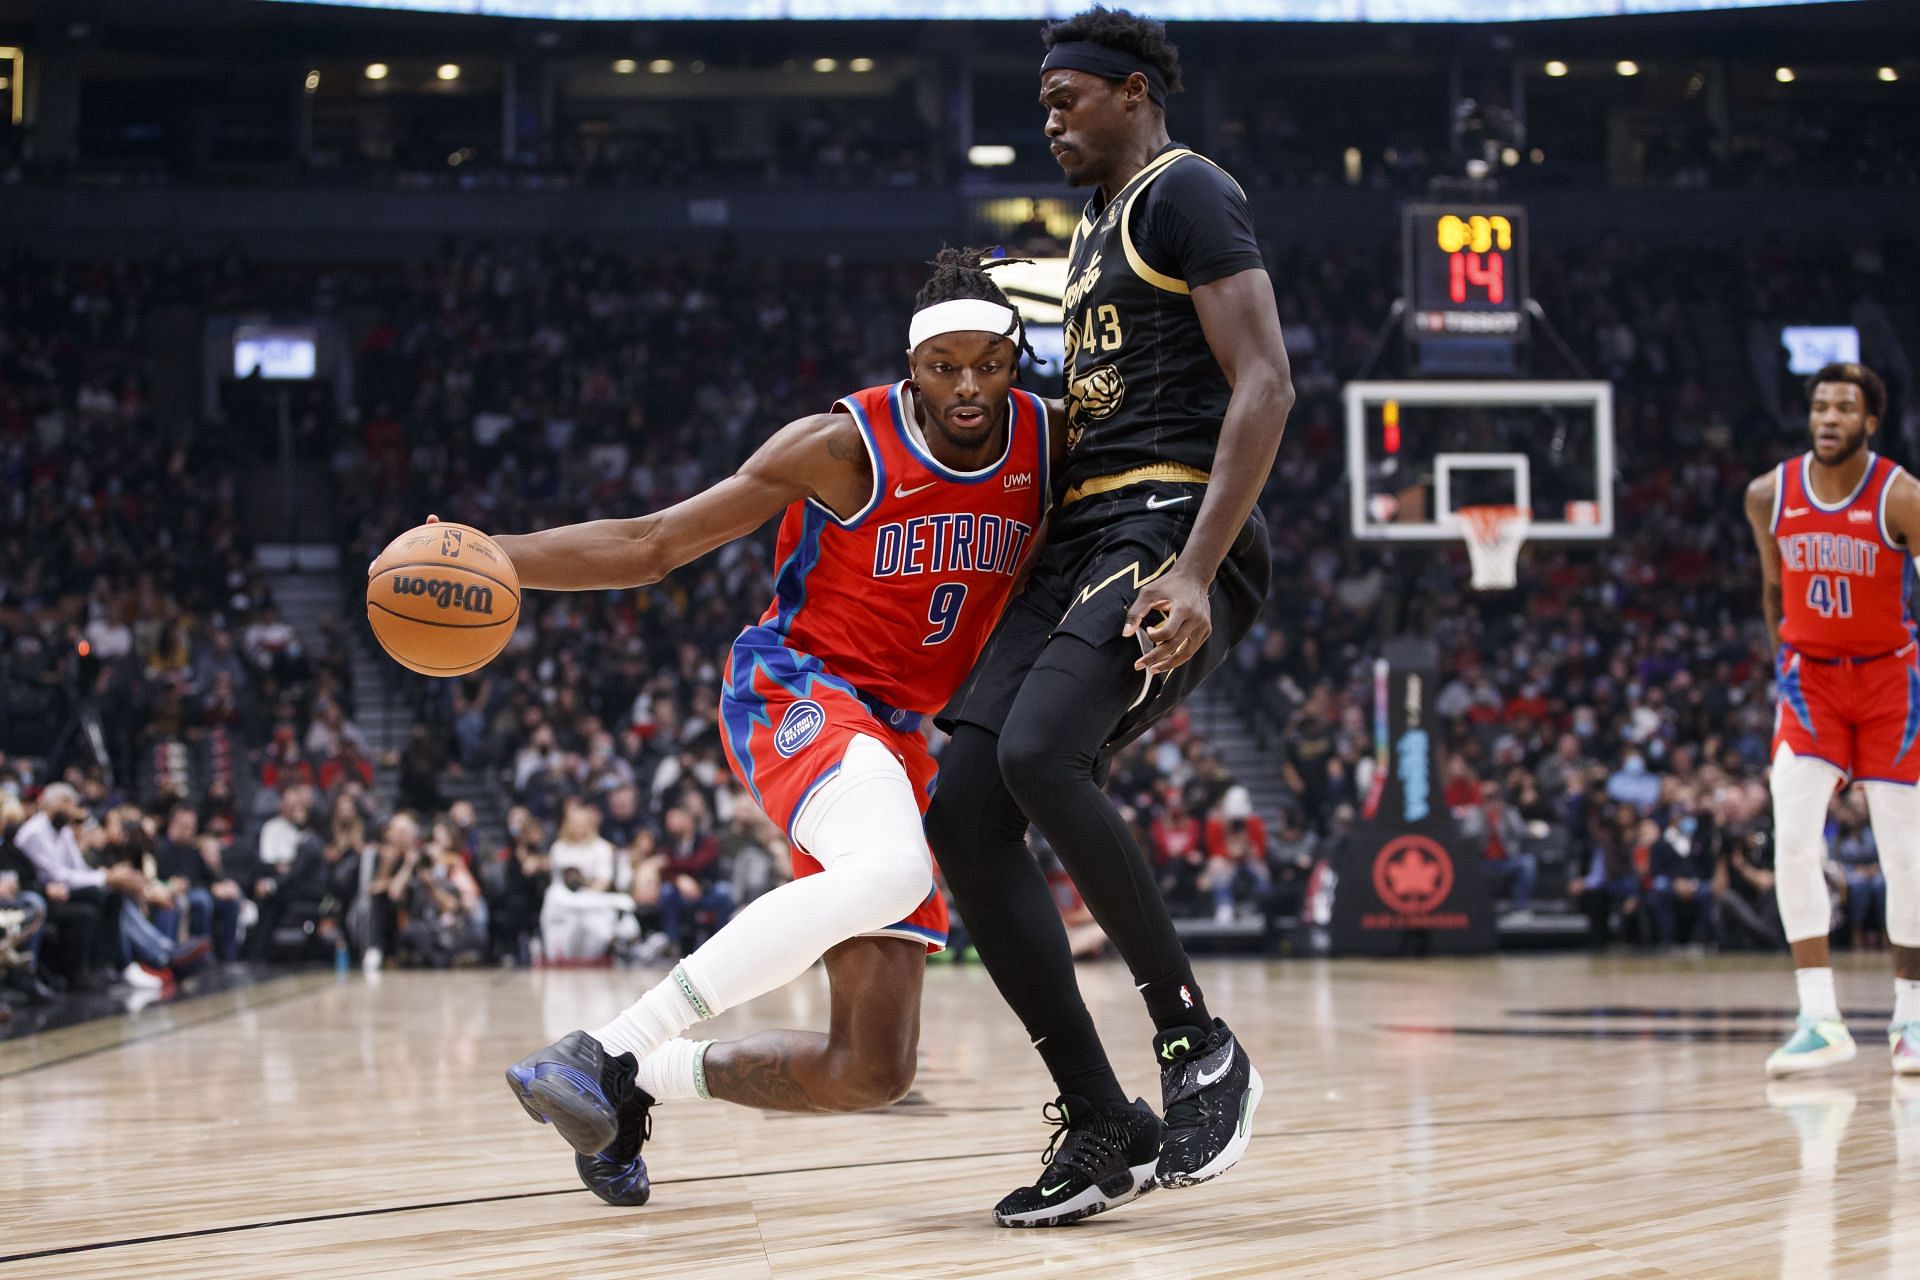 Detroit Pistons vs. Toronto Raptors 2021-22 NBA season